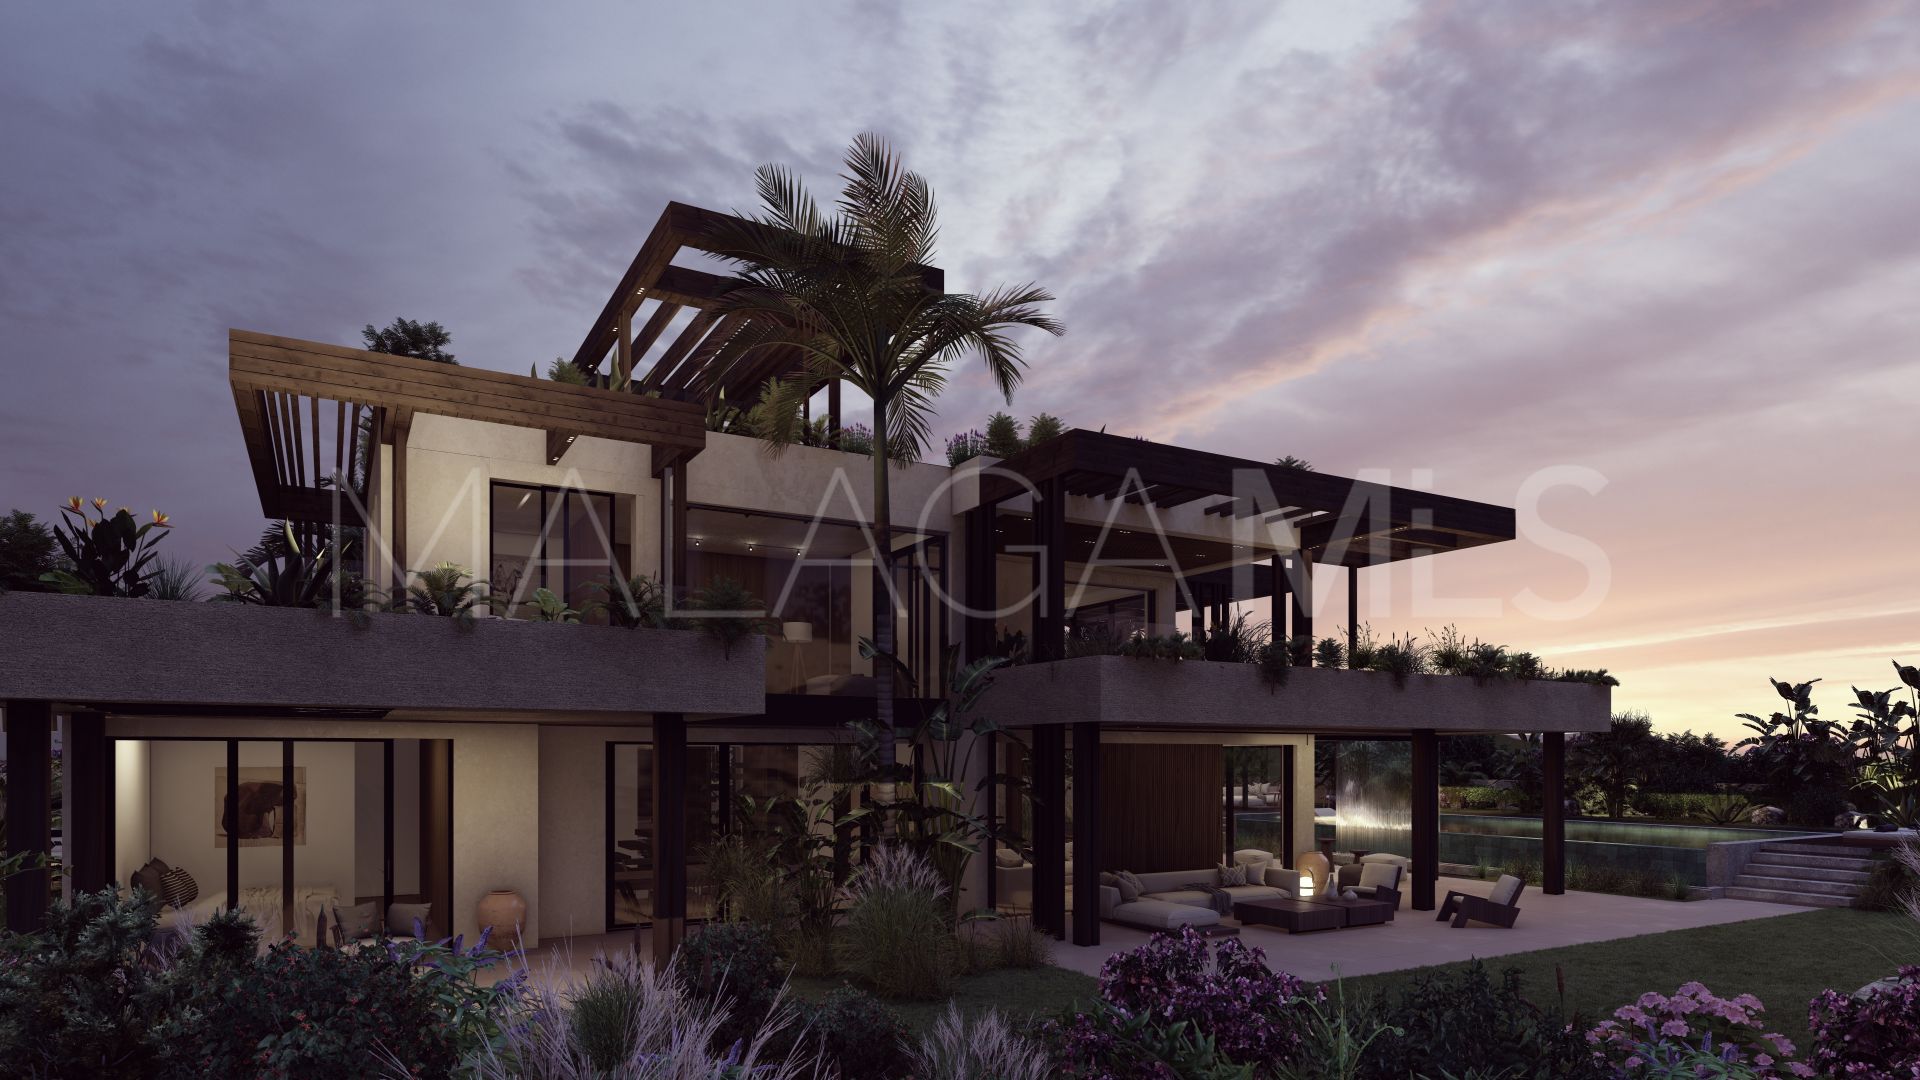 4 bedrooms villa in Guadalmina Baja for sale